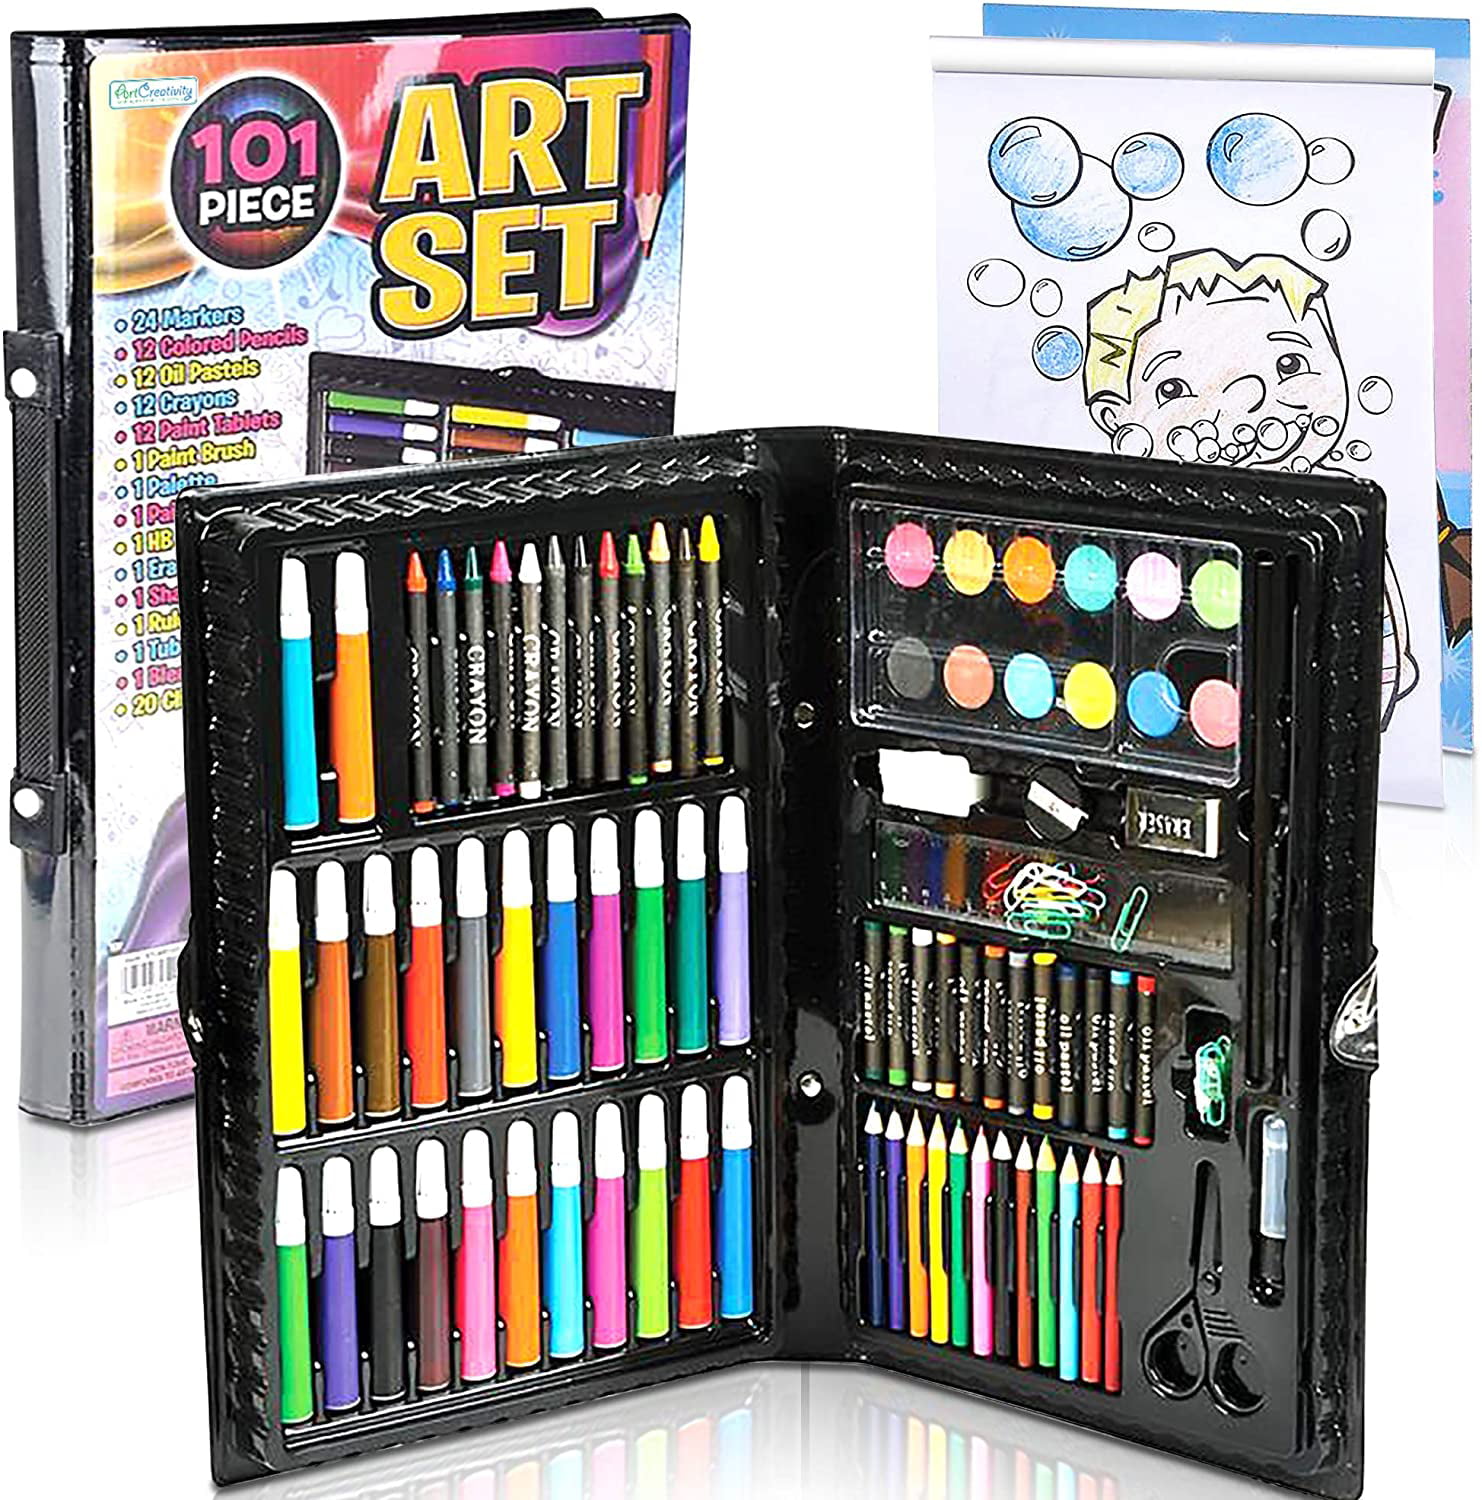 Deluxe Art Set for Kids by Art Creativity Ideal Beginner Artist Kit